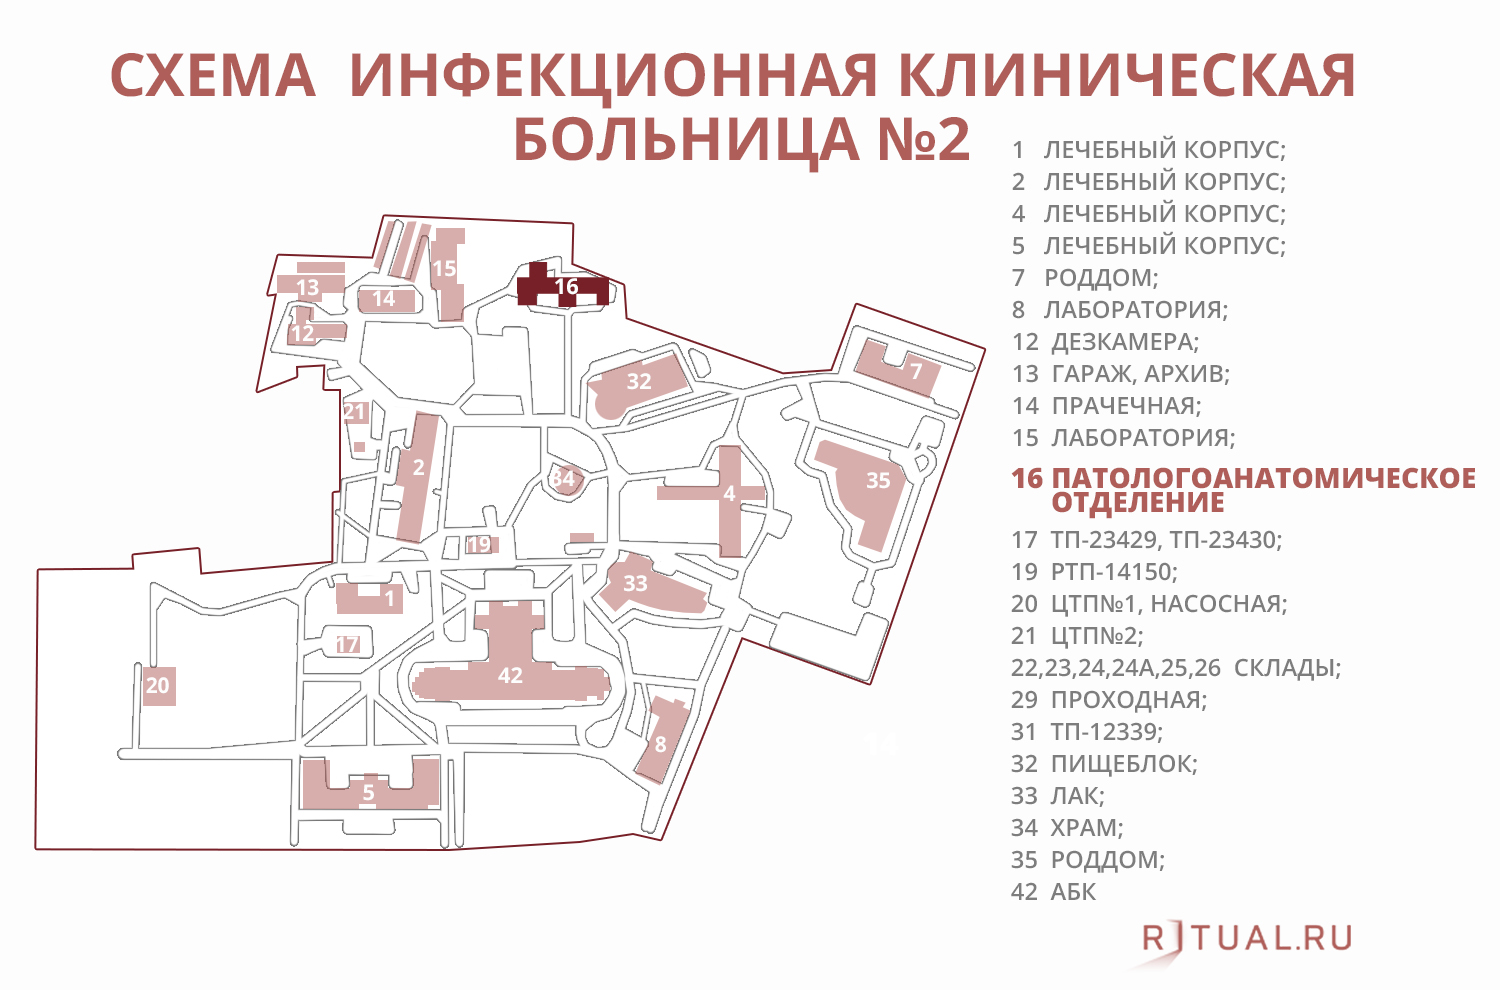 Боткинская карта корпусов